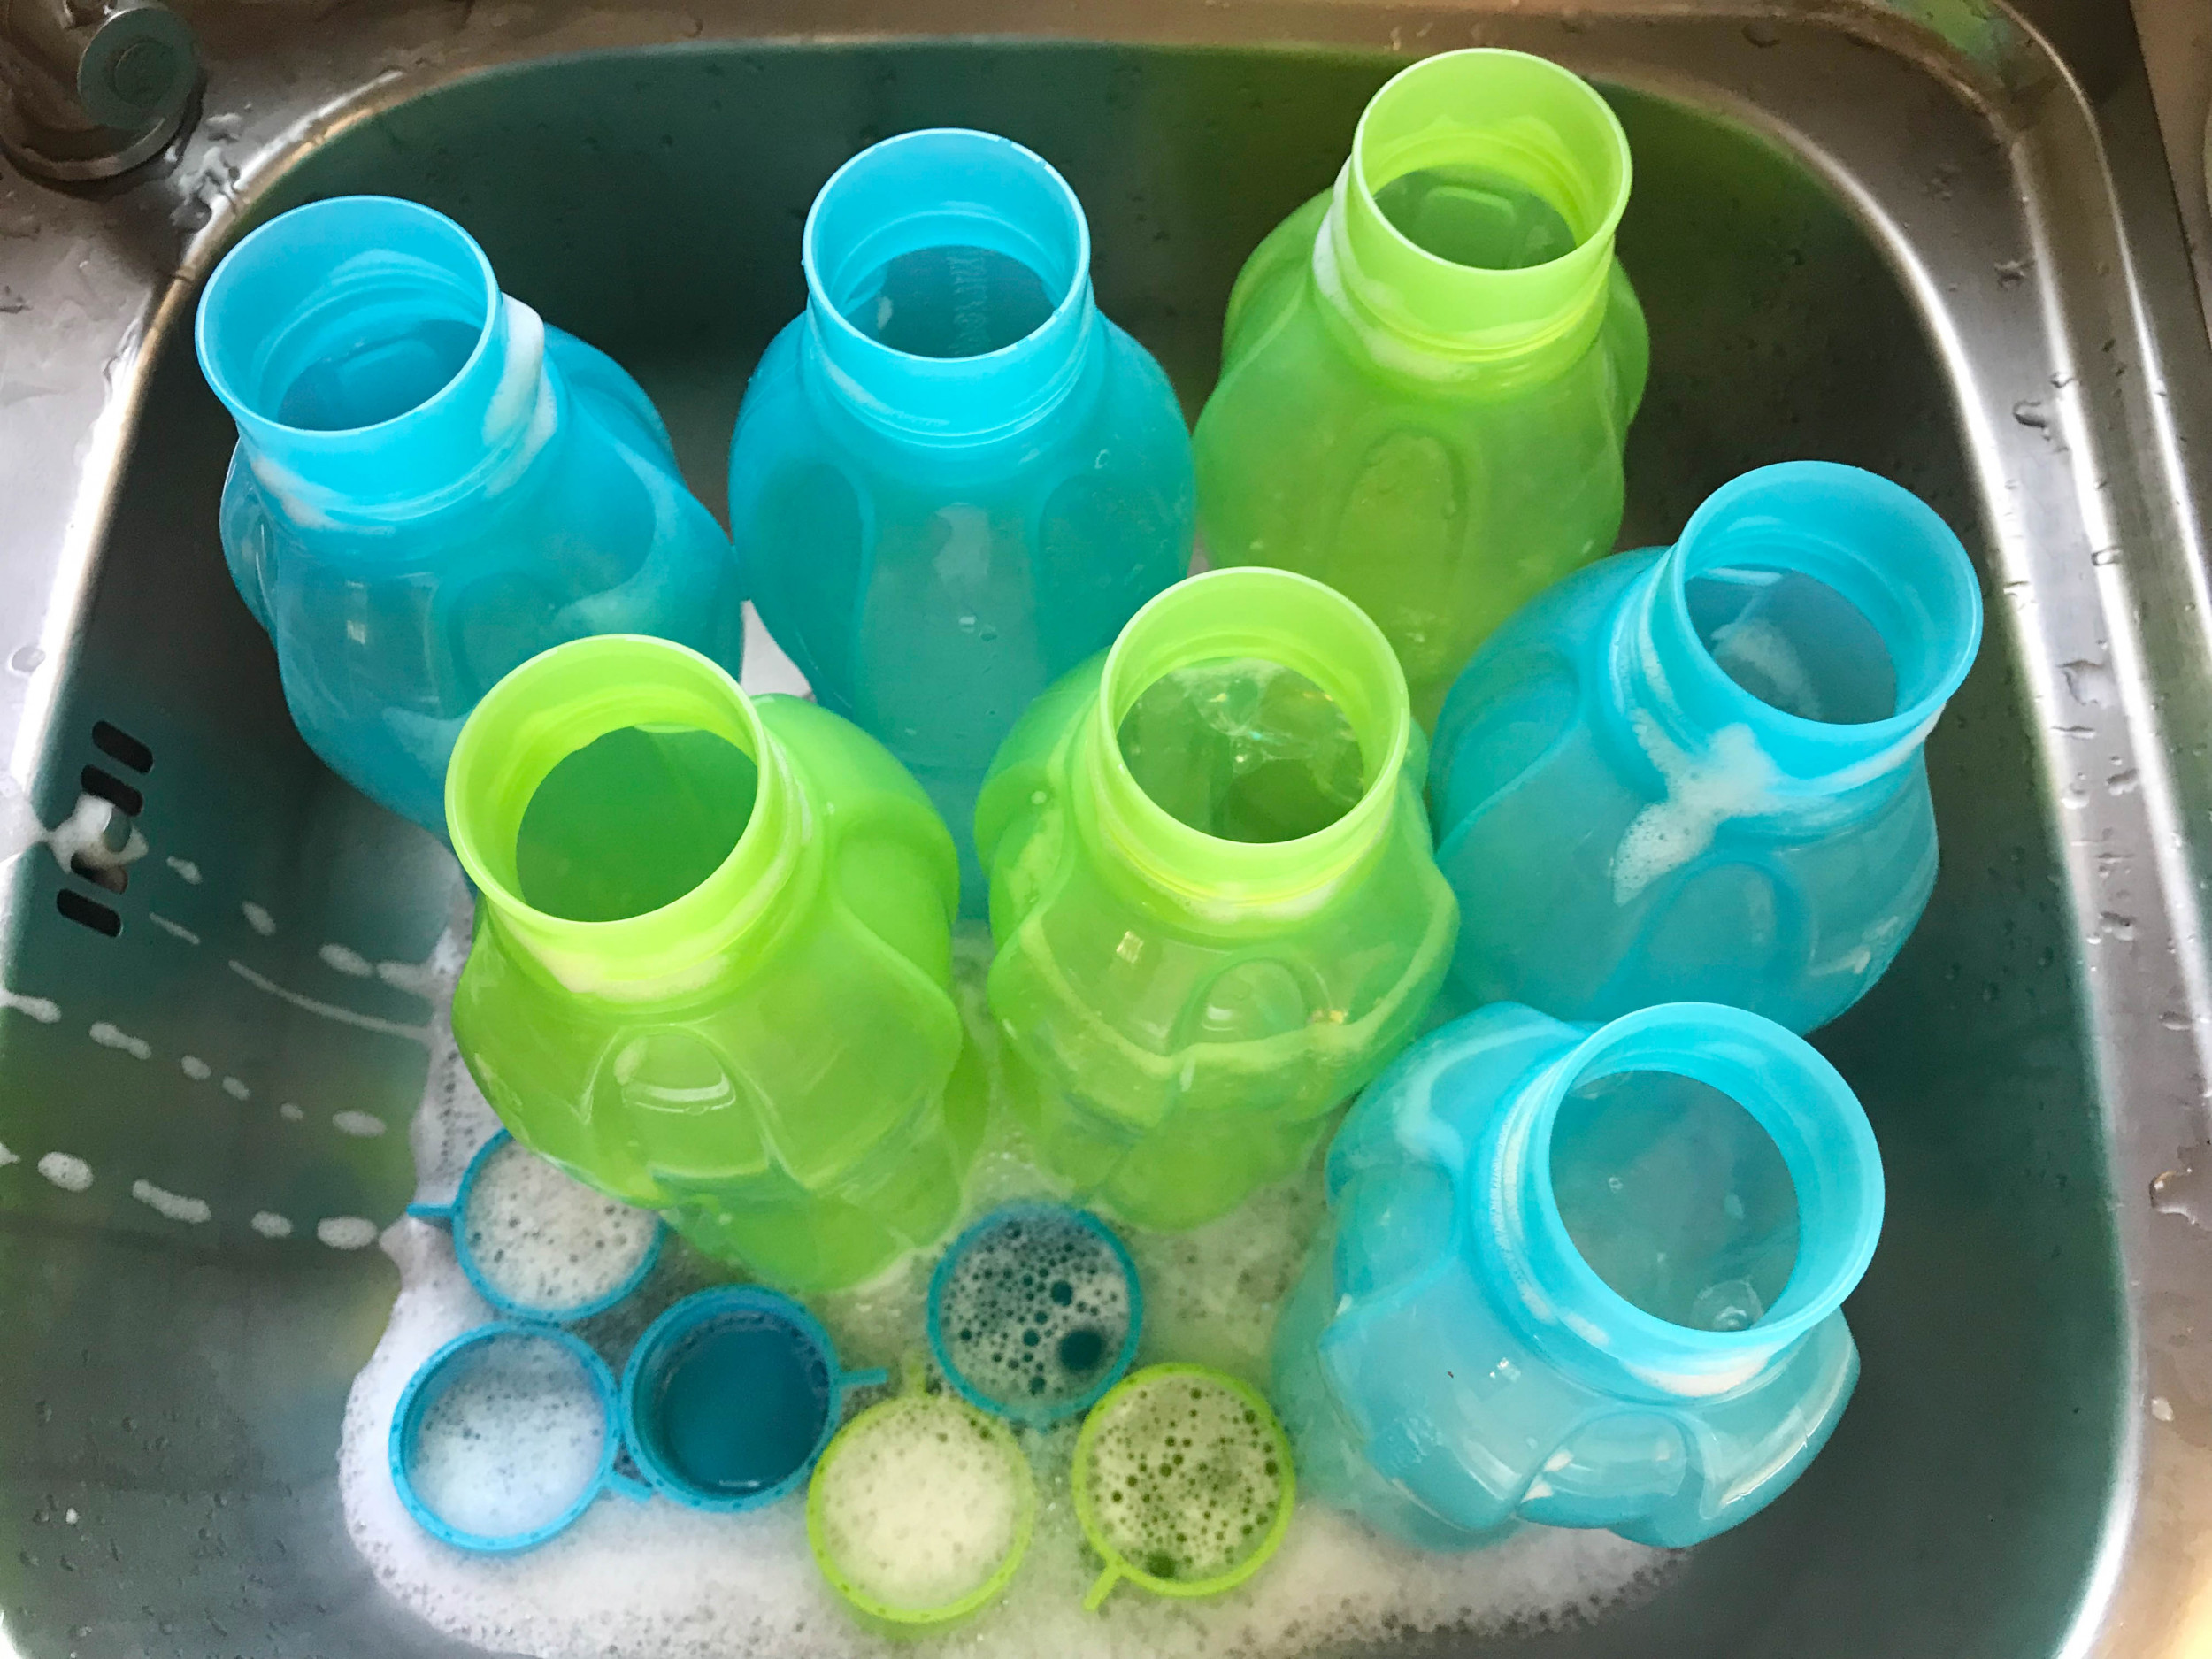 https://d.newsweek.com/en/full/2047131/sink-full-reusable-water-bottles.jpg